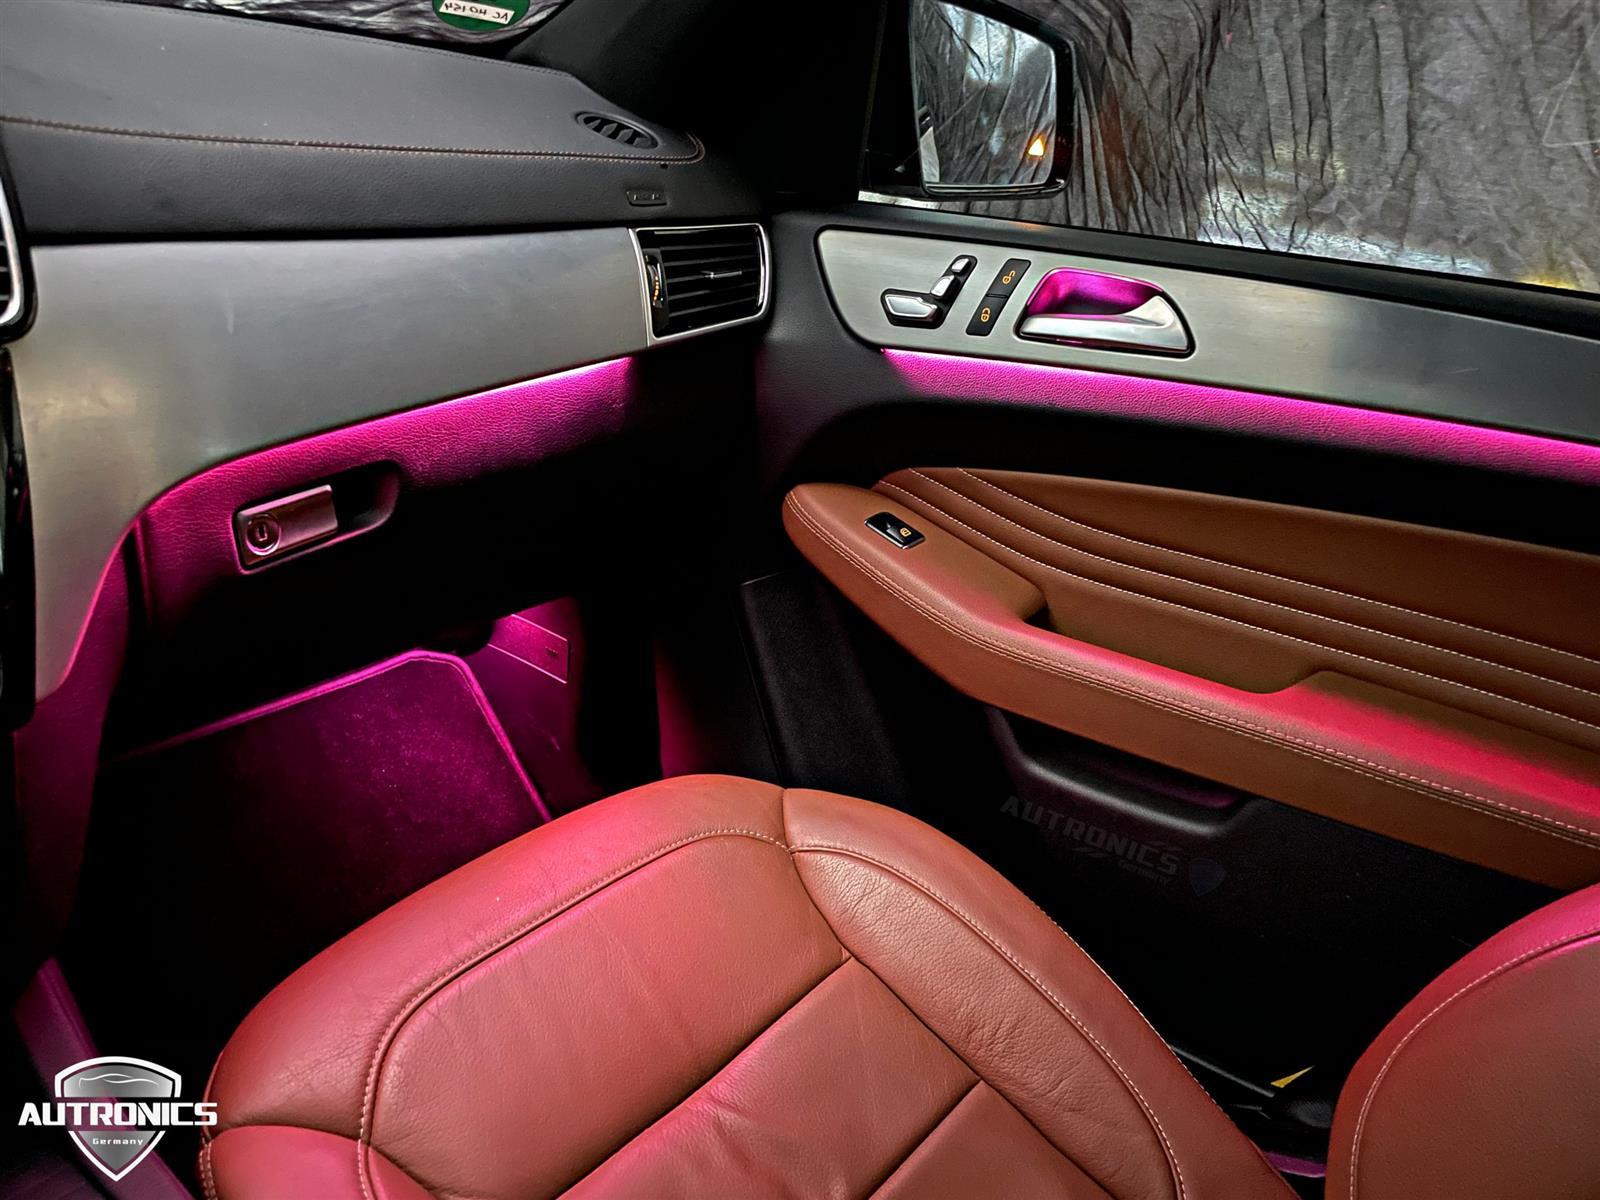 Ambientebeleuchtung Nachrüsten im Auto Beleuchtung Ambiente geeignet für Mercedes Benz GLE & ML Klasse W166 C292 - 05